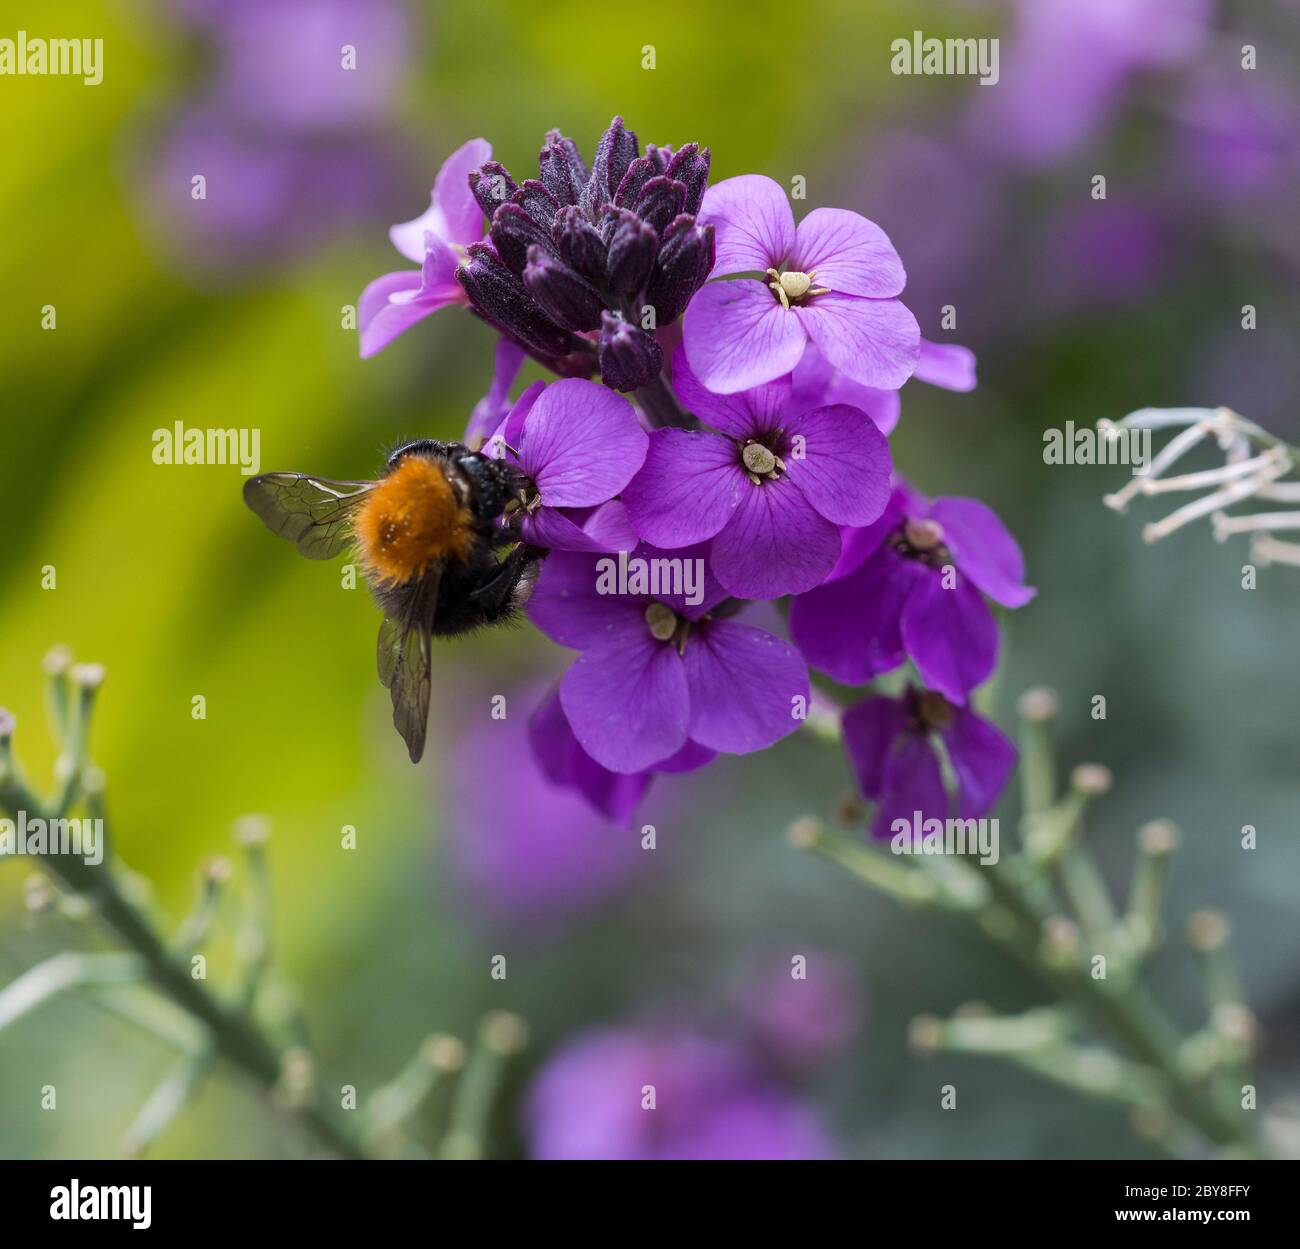 Gros plan d'une abeille collectant du miel d'une fleur d'erysimum violette sur un fond vert flou Banque D'Images